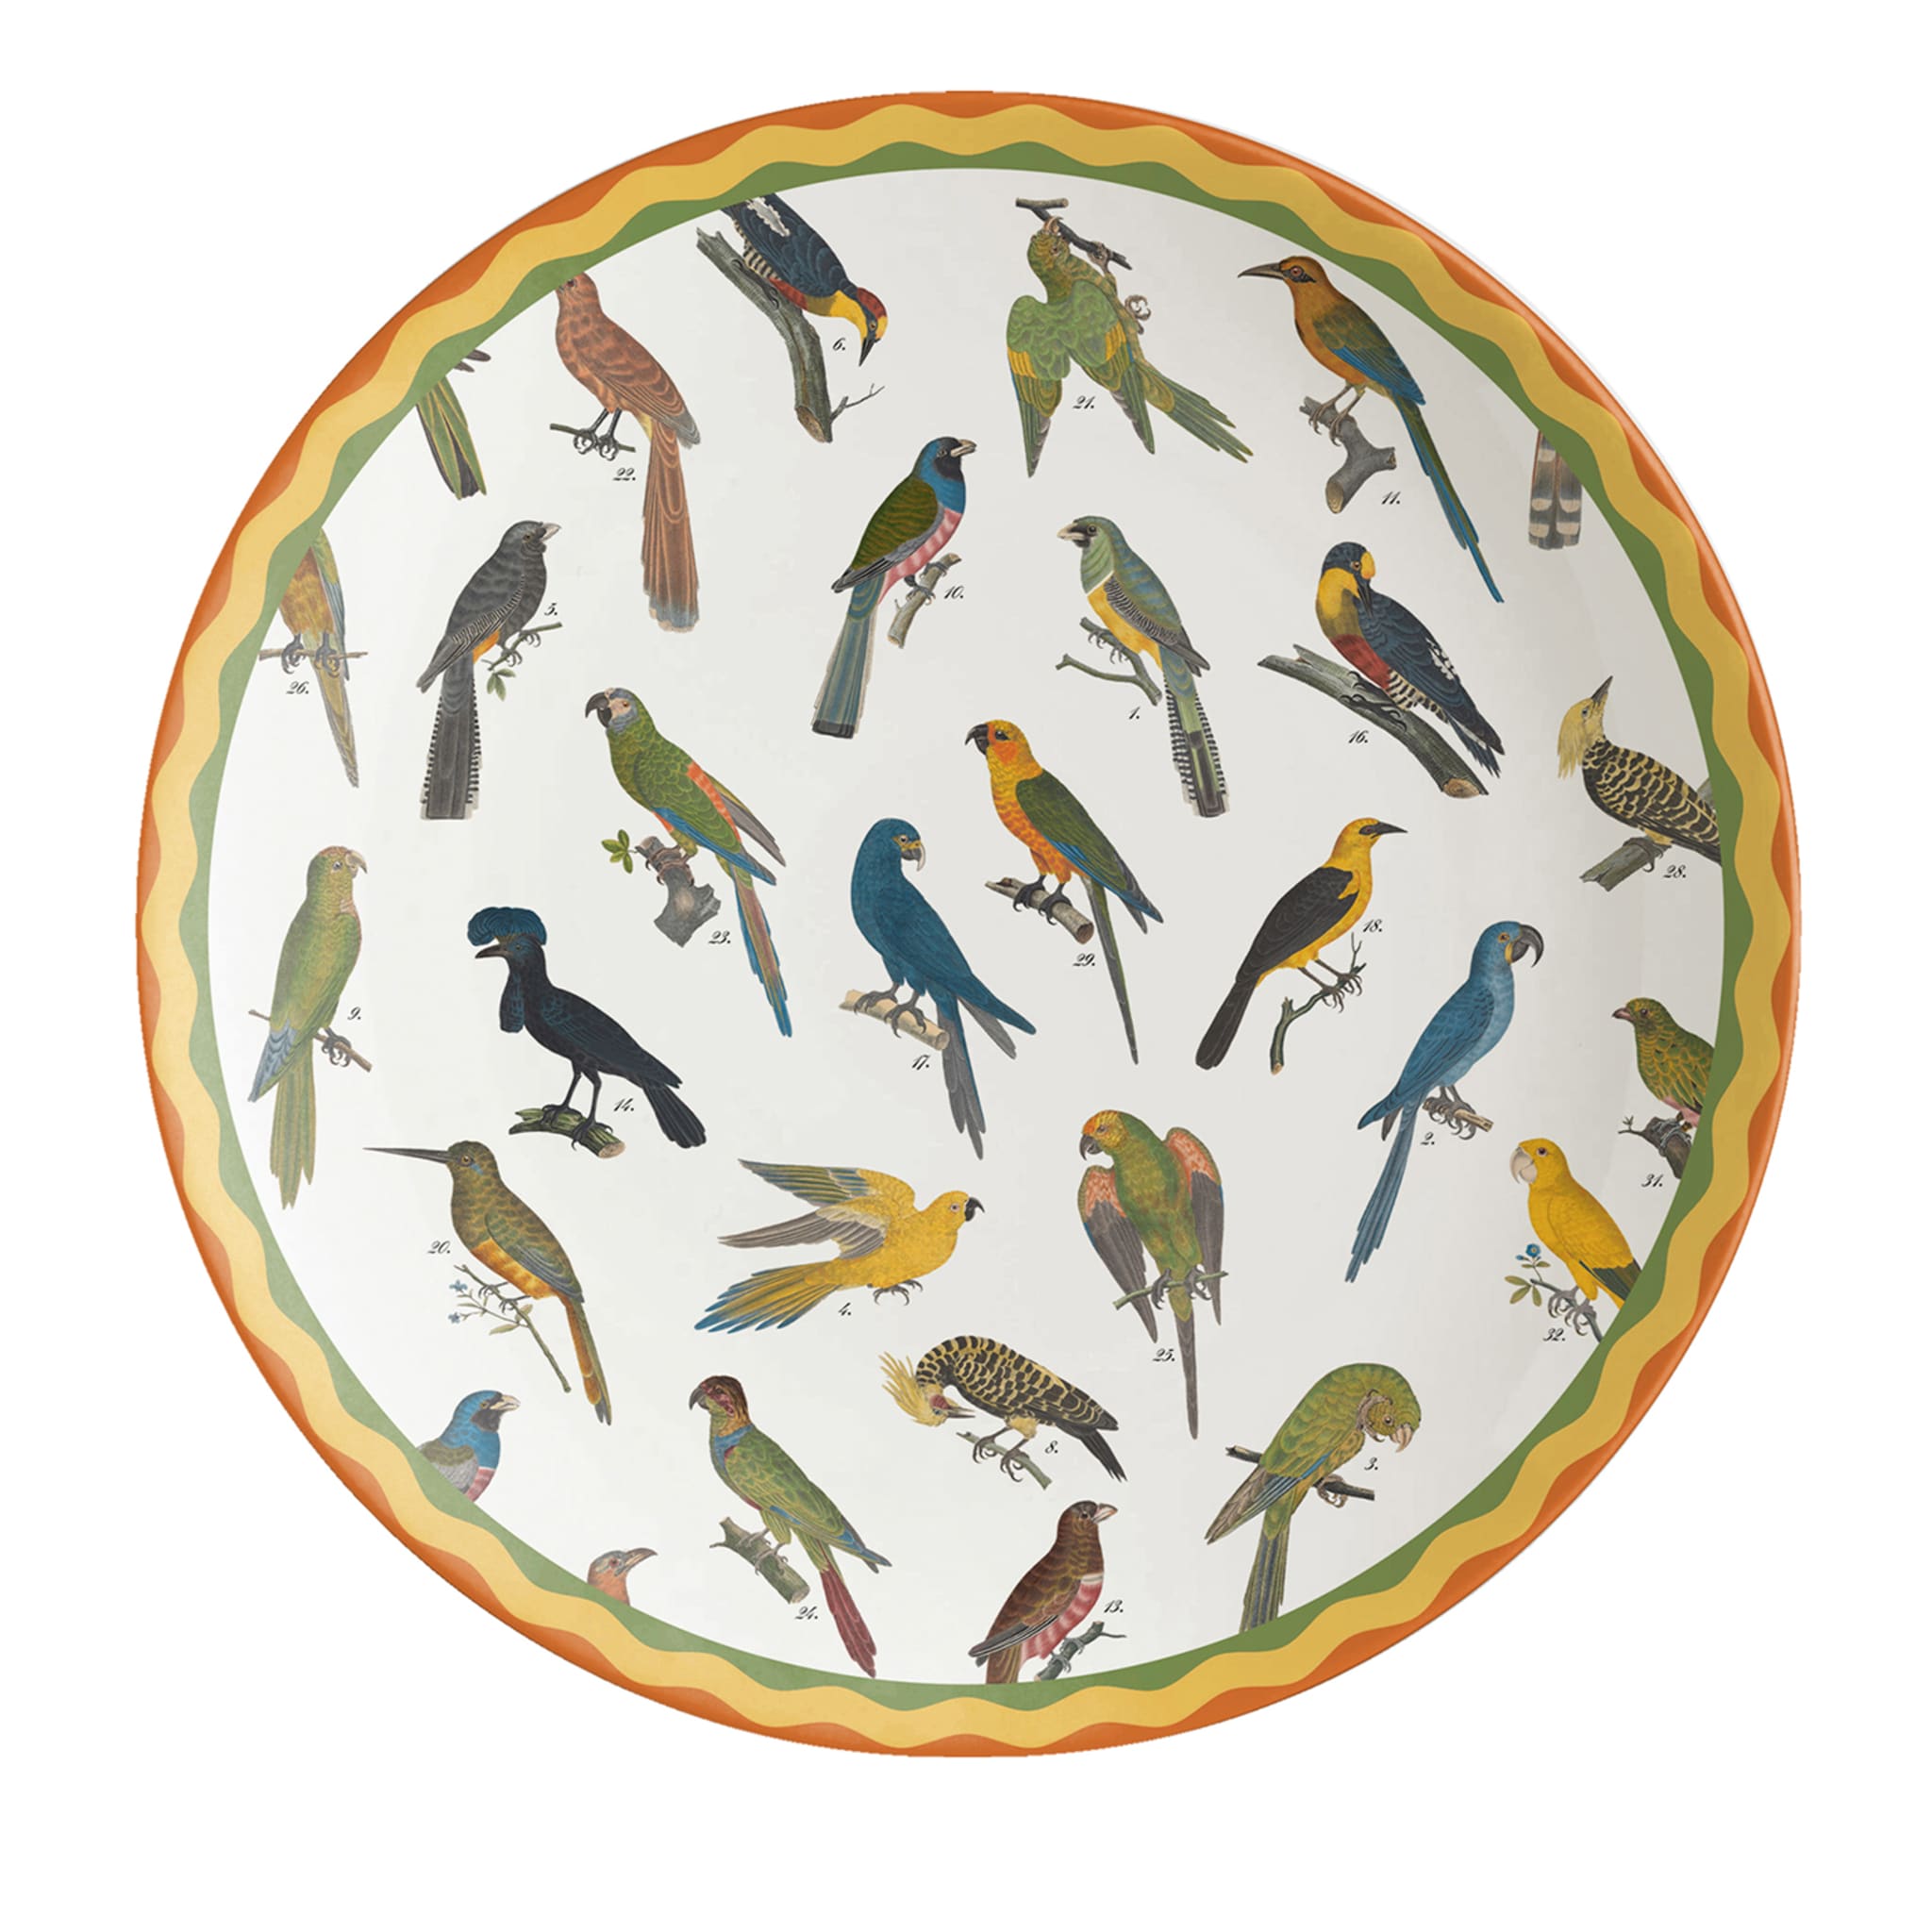 Cabinet De Curiosités Porcelain Charger Plate With Birds - Main view